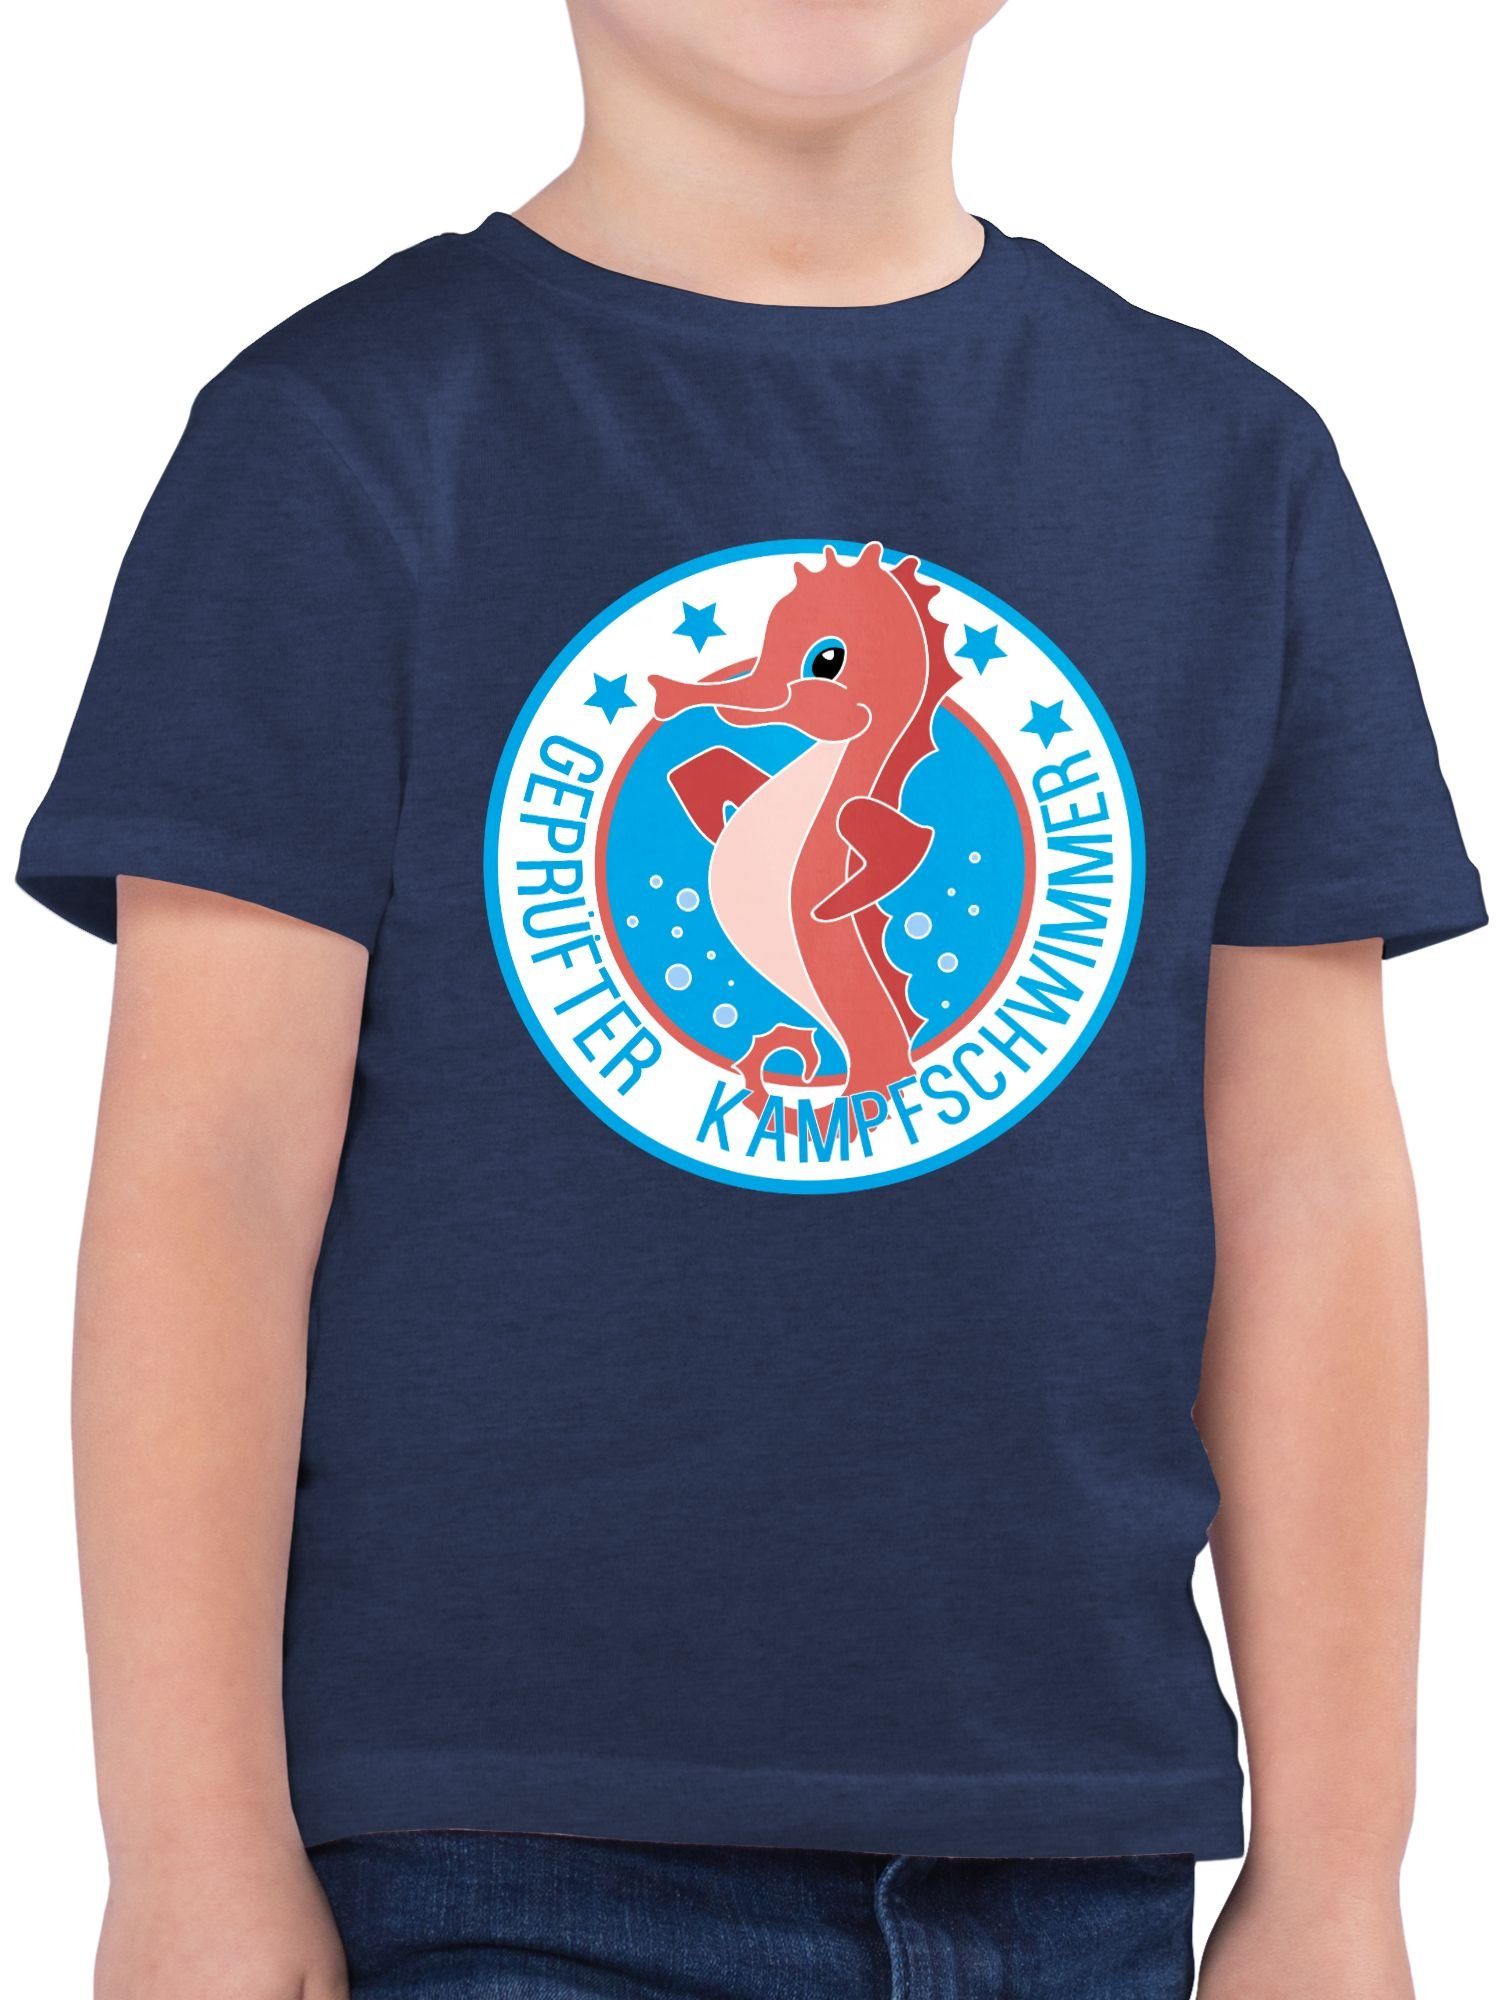 Shirtracer T-Shirt Seepferdchen Schwimmer Kinder Sport Kleidung